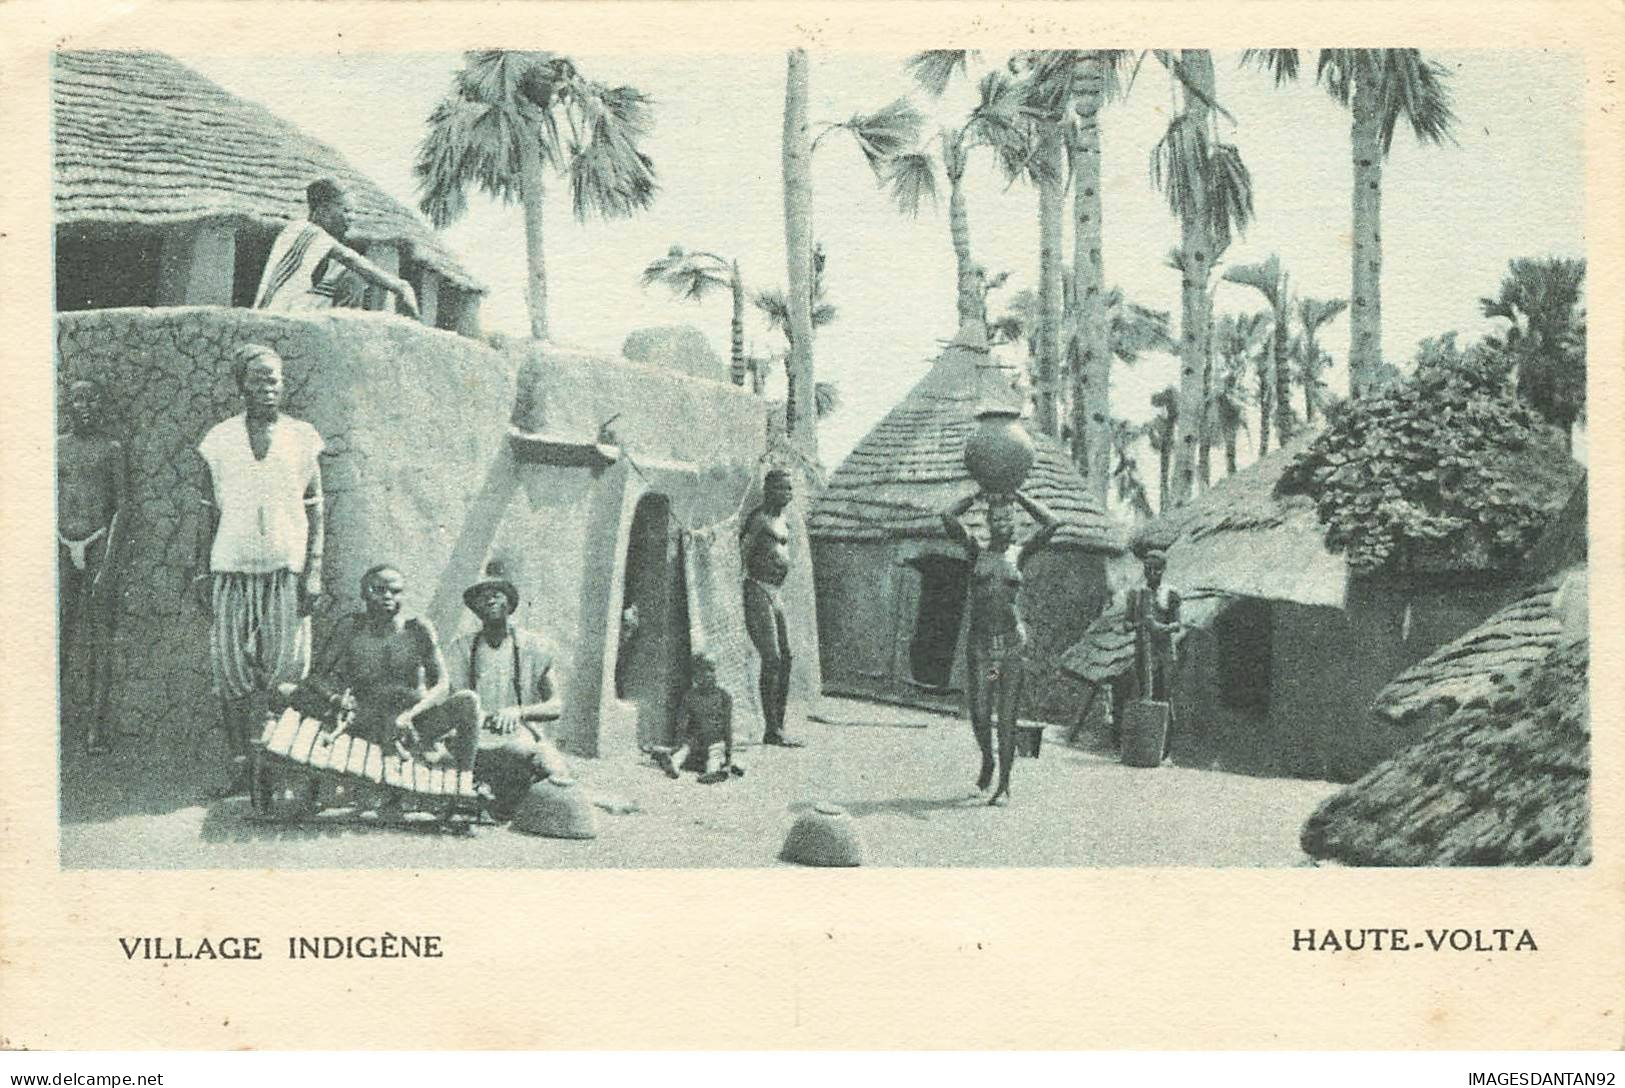 AFRIQUE OCCIDENTALE FRANCAISE #27802 VILLAGE INDIGENE FEMME SEINS NUS EXPOSITION COLONAILE 1931 - Unclassified